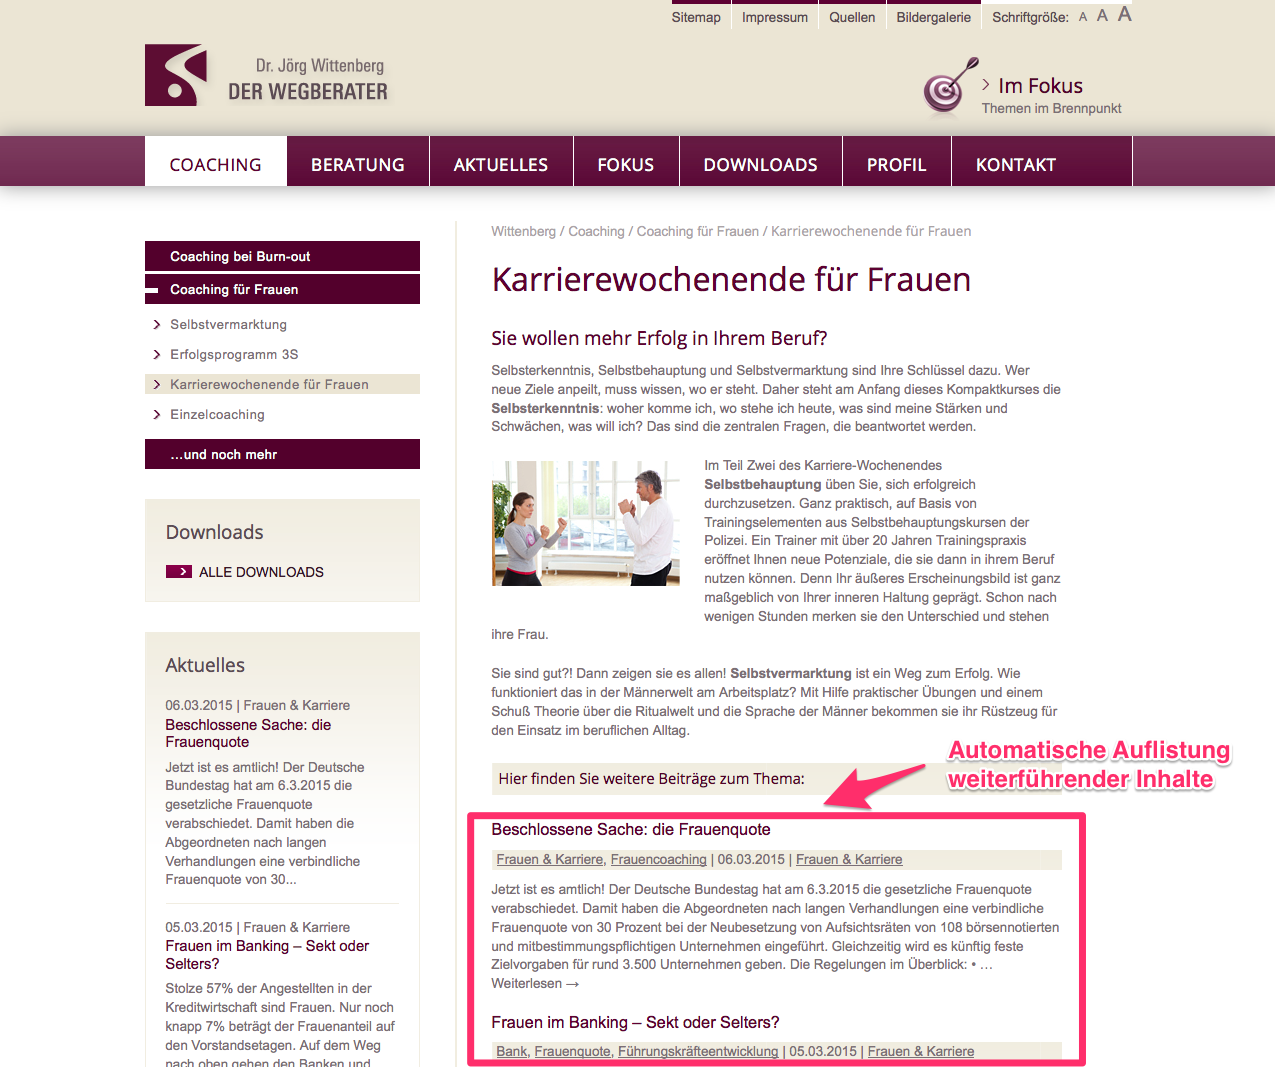 Dynamische Inhalte Fur Suchmaschinenoptimierung Seo Verwenden Internetagentur Perimetrik Bonn Darmstadt